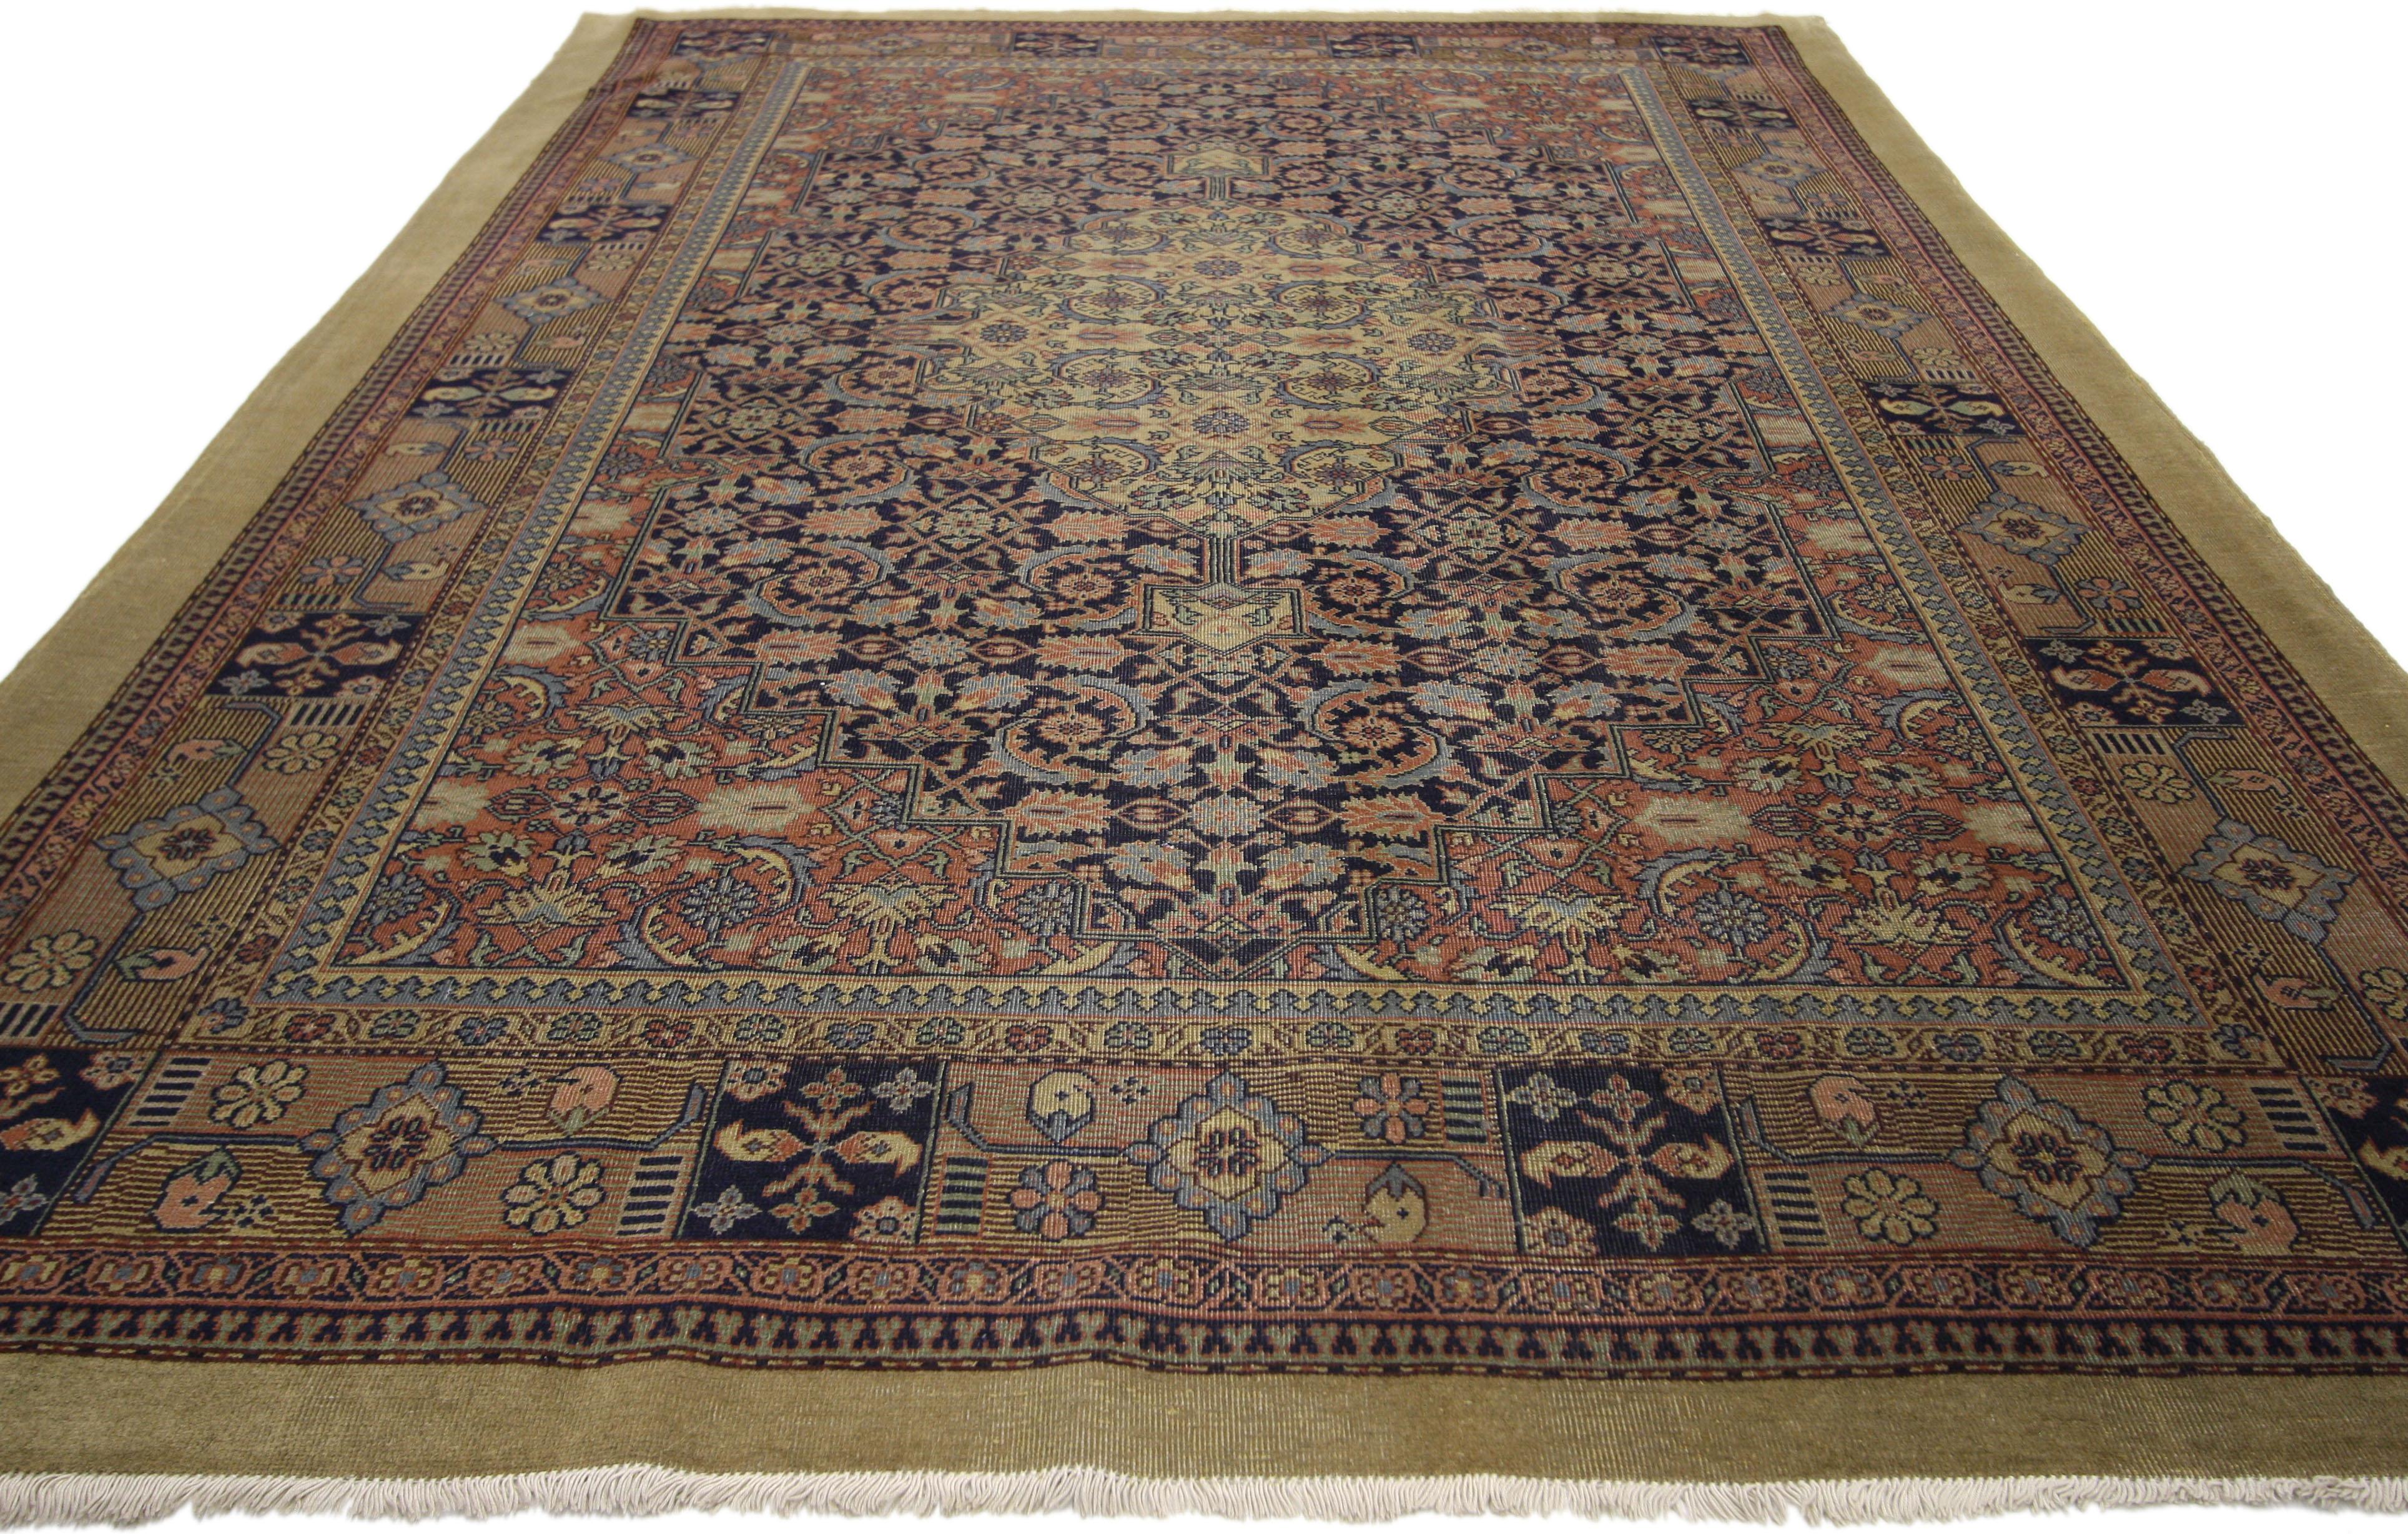 71853, Persischer Teppich im Malayer-Stil im Used-Look. Prächtige, dichte Ornamente füllen das Teppichfeld dieses Distressed Persian Malayer-Teppichs. Ein farbenfrohes Gitterwerk verbindet das Medaillon und die Zwickel und fügt sich nahtlos in einen